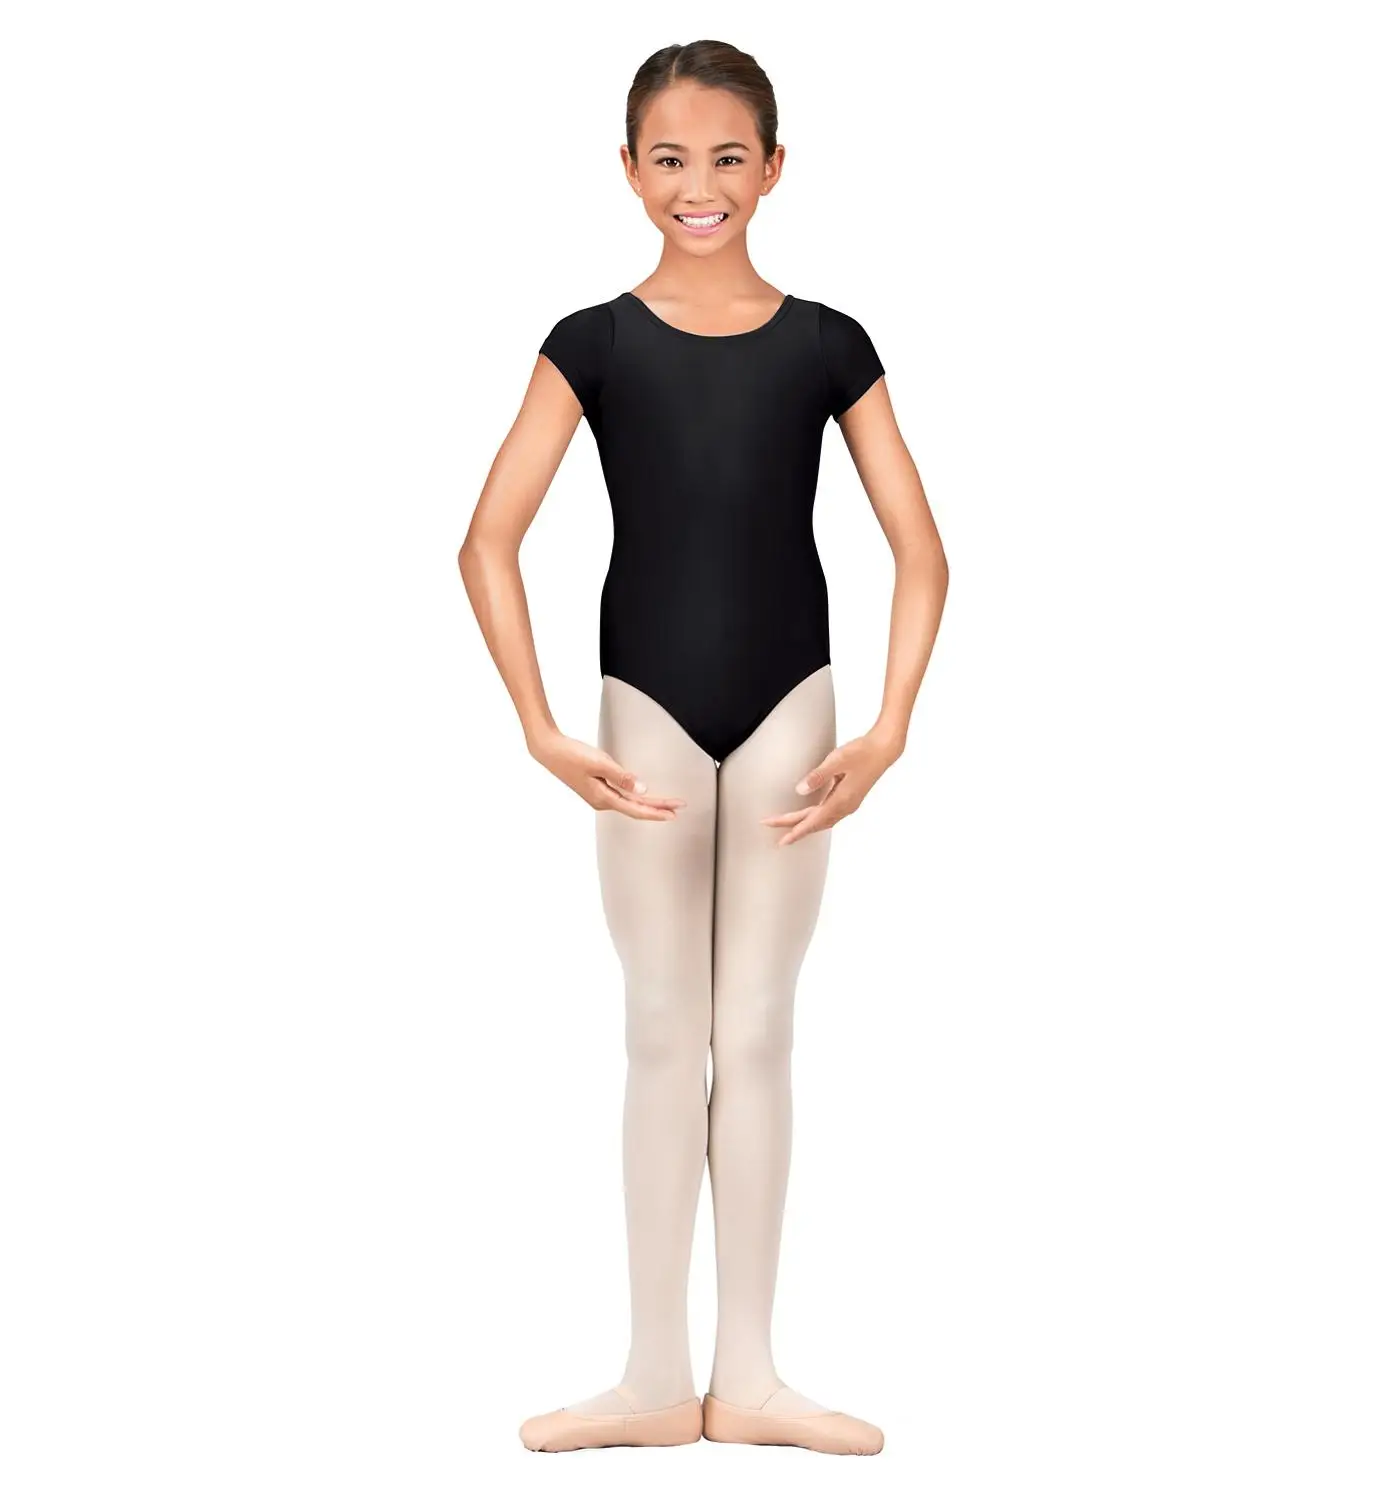 Классический короткий рукав для девочек, тренировочная одежда для занятий гимнастикой для малышей черного цвета для балета, для танцев трико лайкровая танцевальная одежда спандекс Детское трико 3t - Цвет: Black